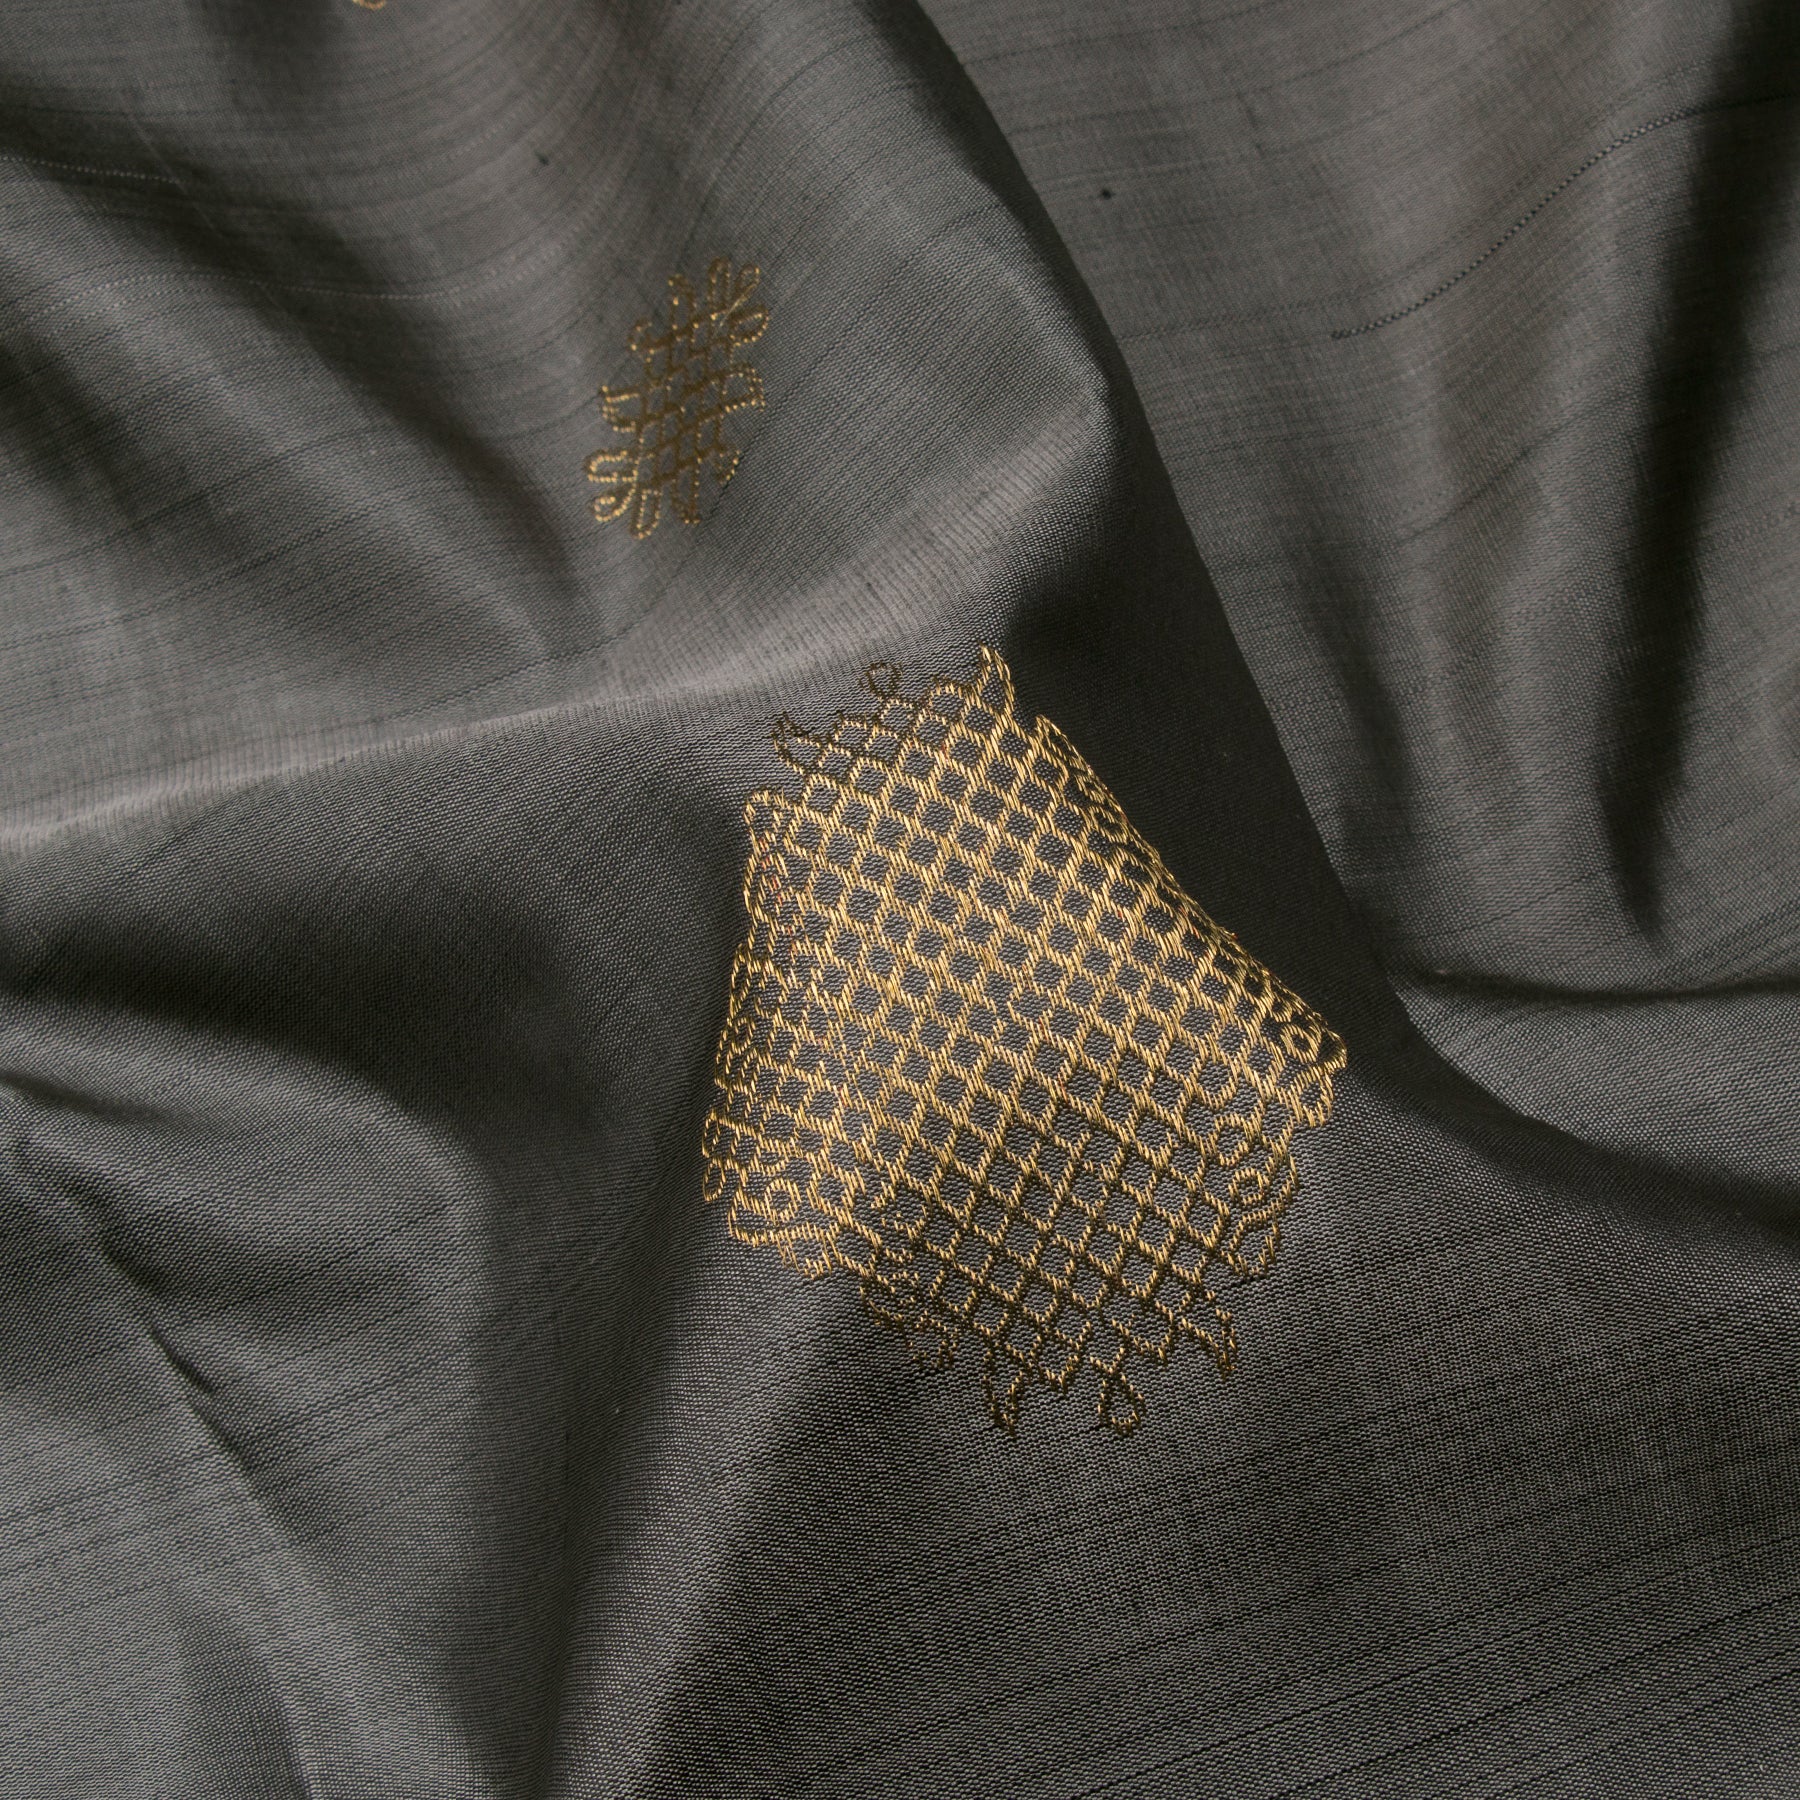 Kanakavalli Kanjivaram Silk Sari 23-595-HS001-11347 - Fabric View